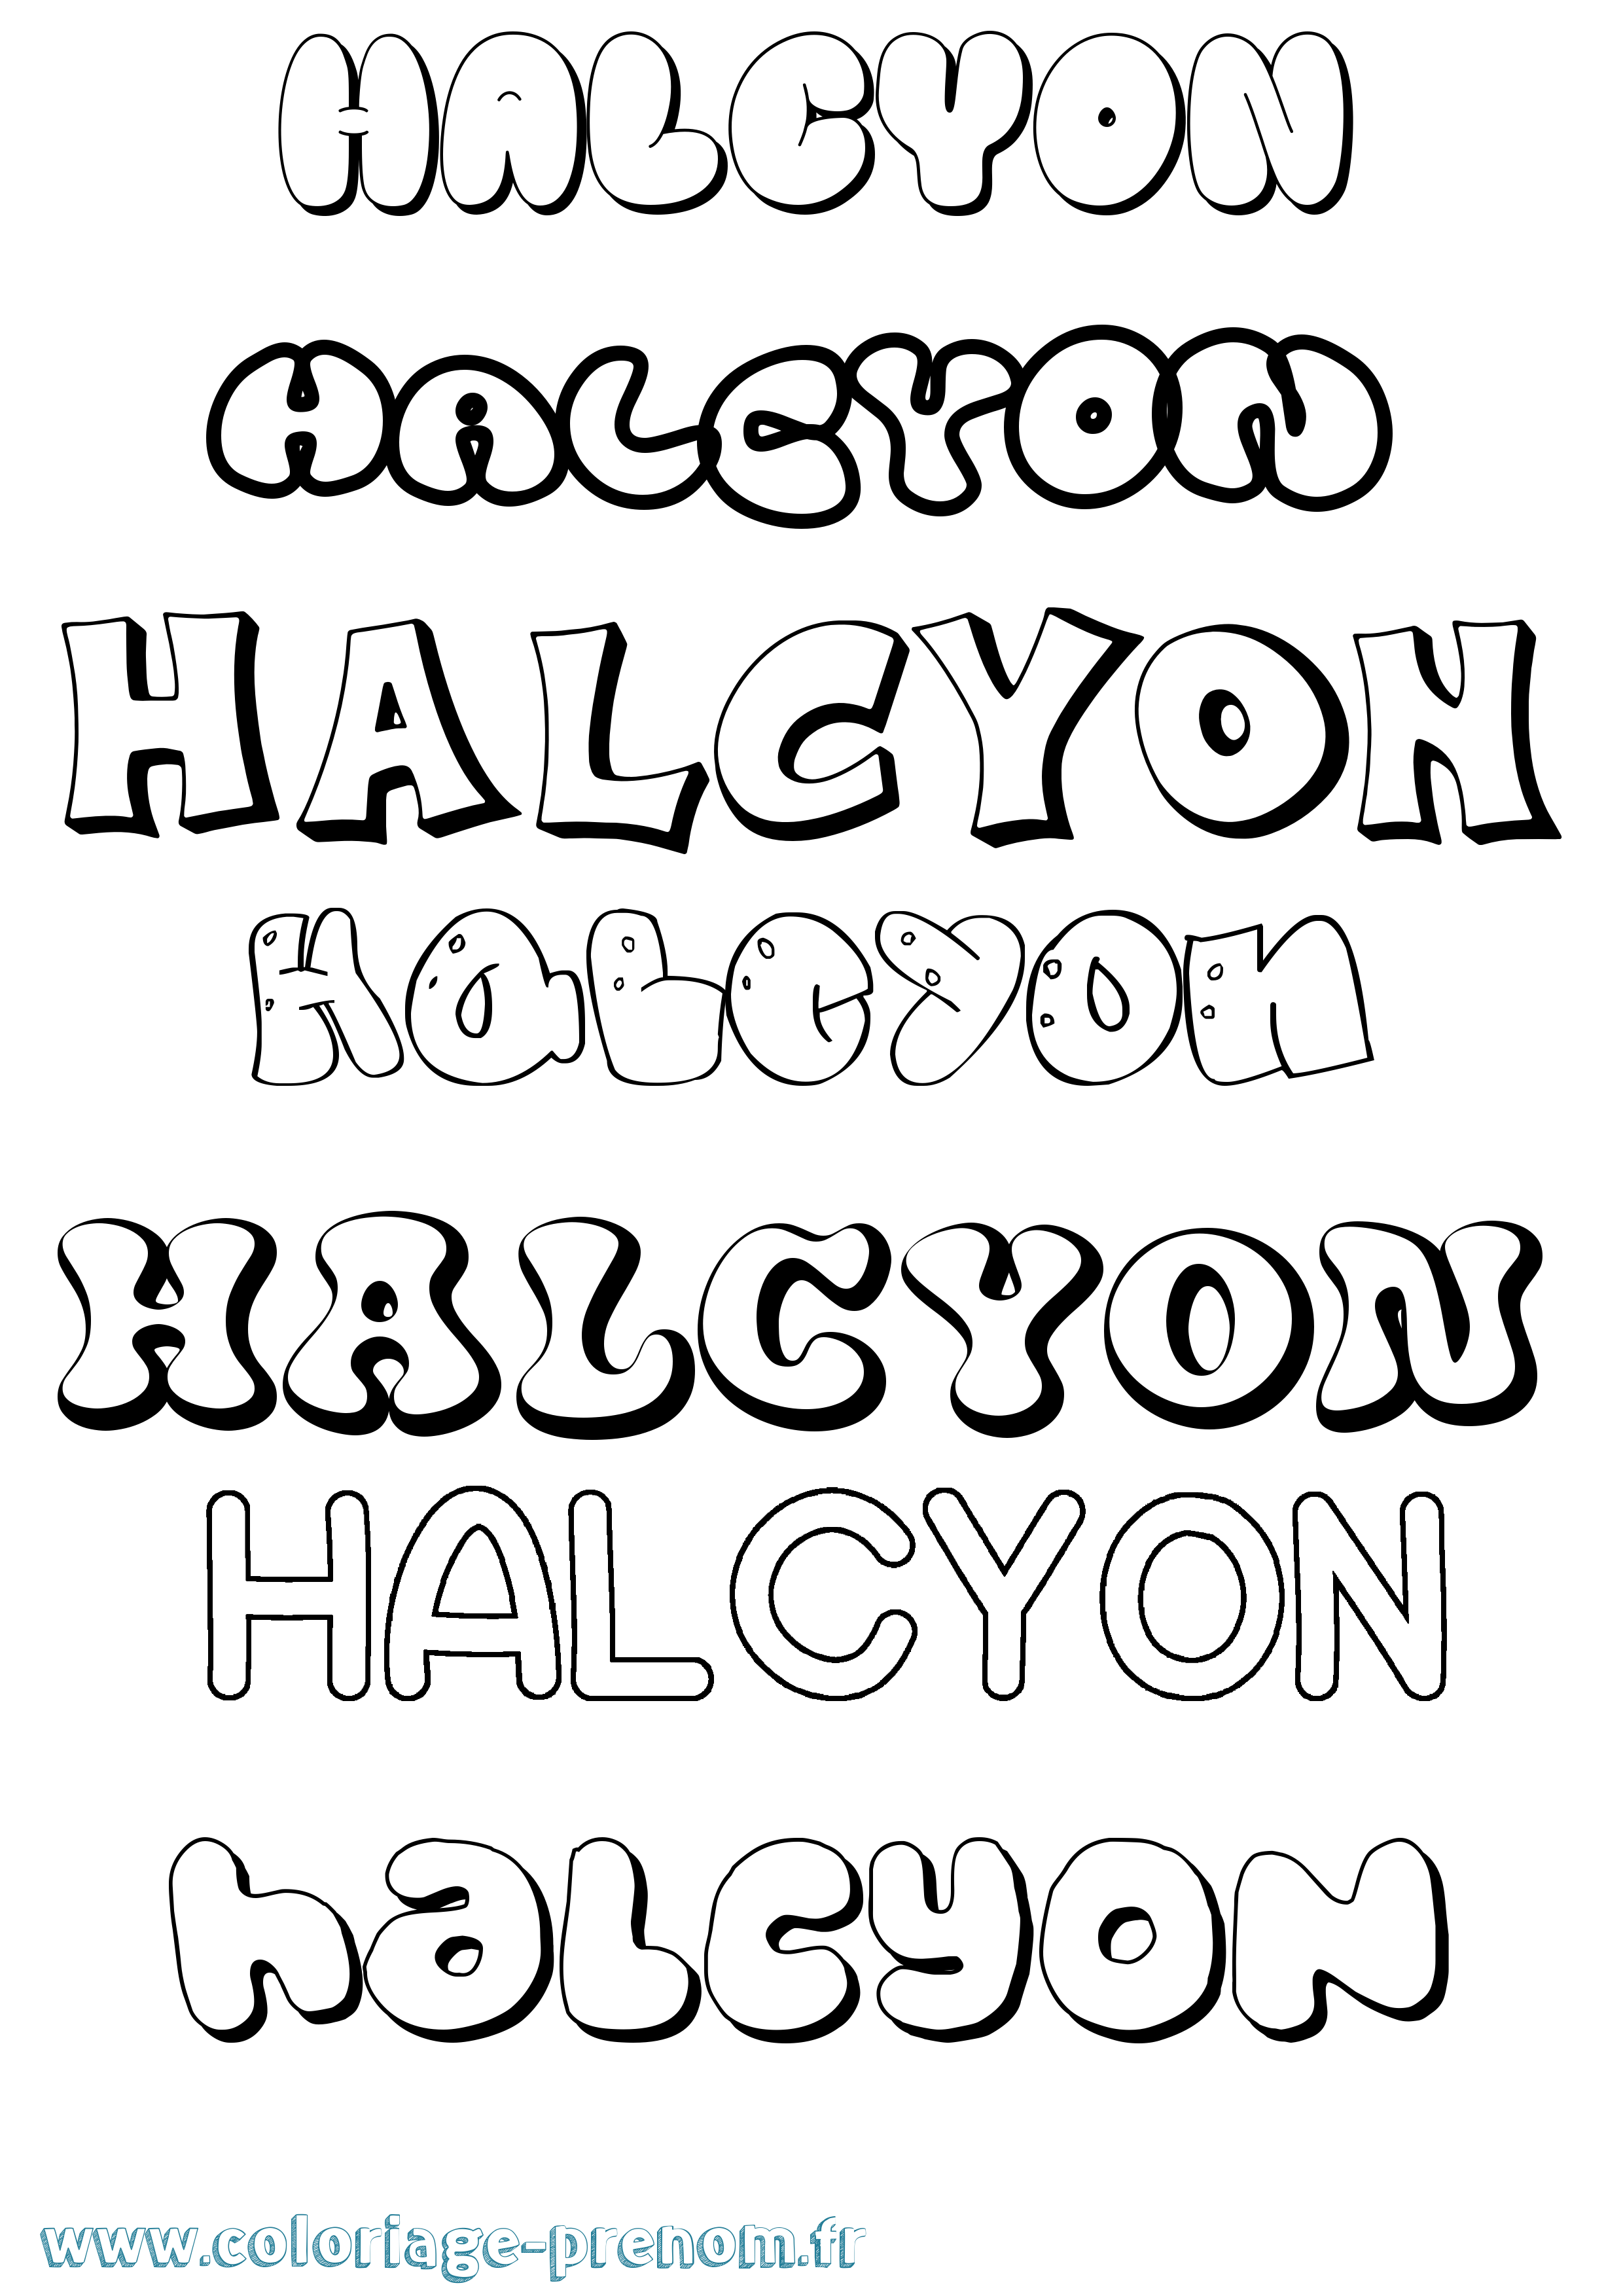 Coloriage prénom Halcyon Bubble